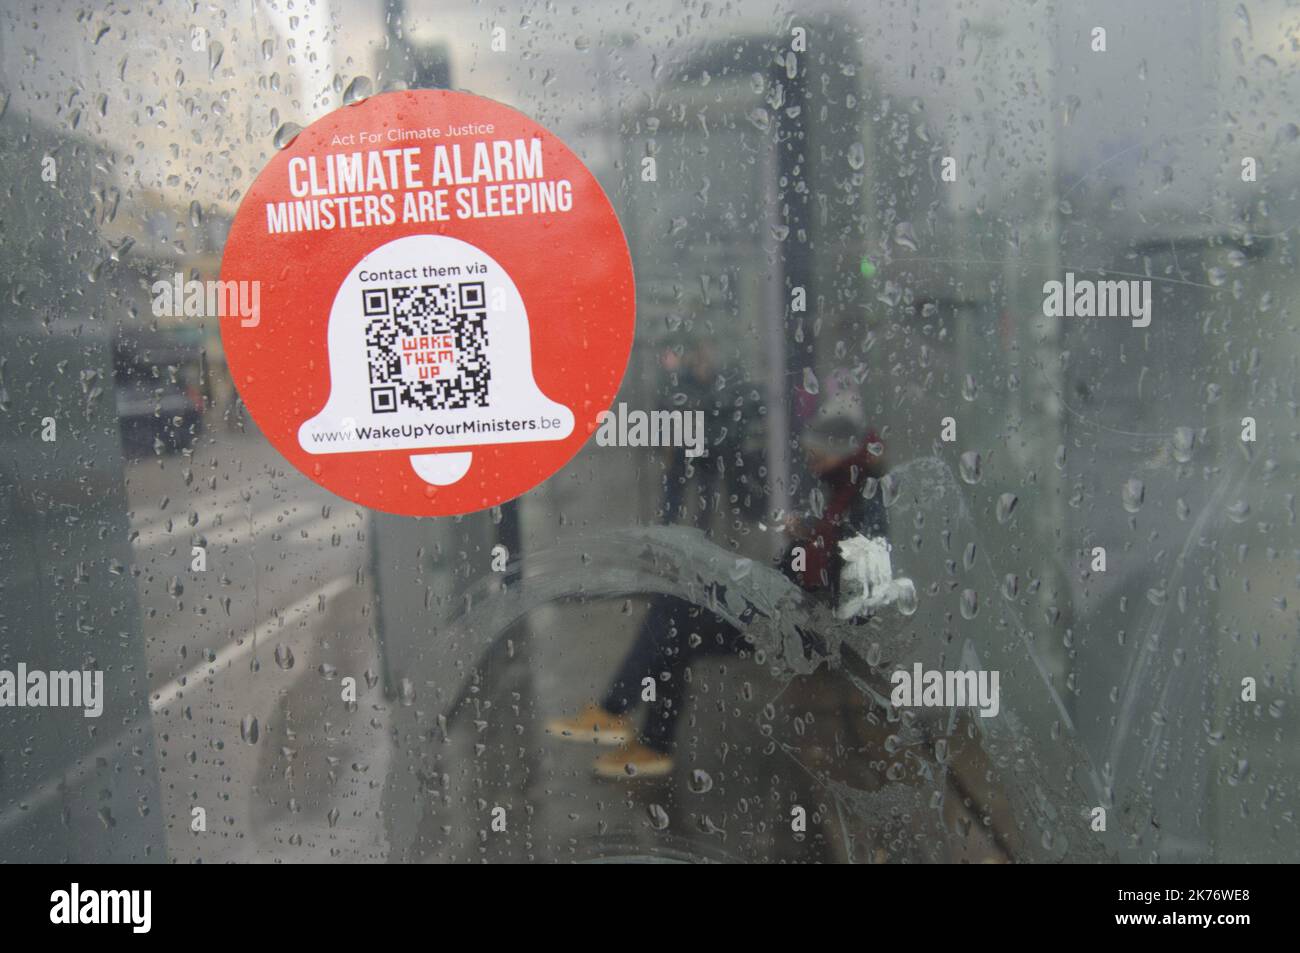 Campagna pubblicitaria "ACT for Climate Justice", un movimento cittadino, che sostiene azioni di disobbedienza civile per una maggiore giustizia sociale e climatica. Poster e adesivi sono stati bloccati in diverse città, tra cui Bruxelles, per chiamare i cittadini a "svegliare" i loro ministri. Foto Stock